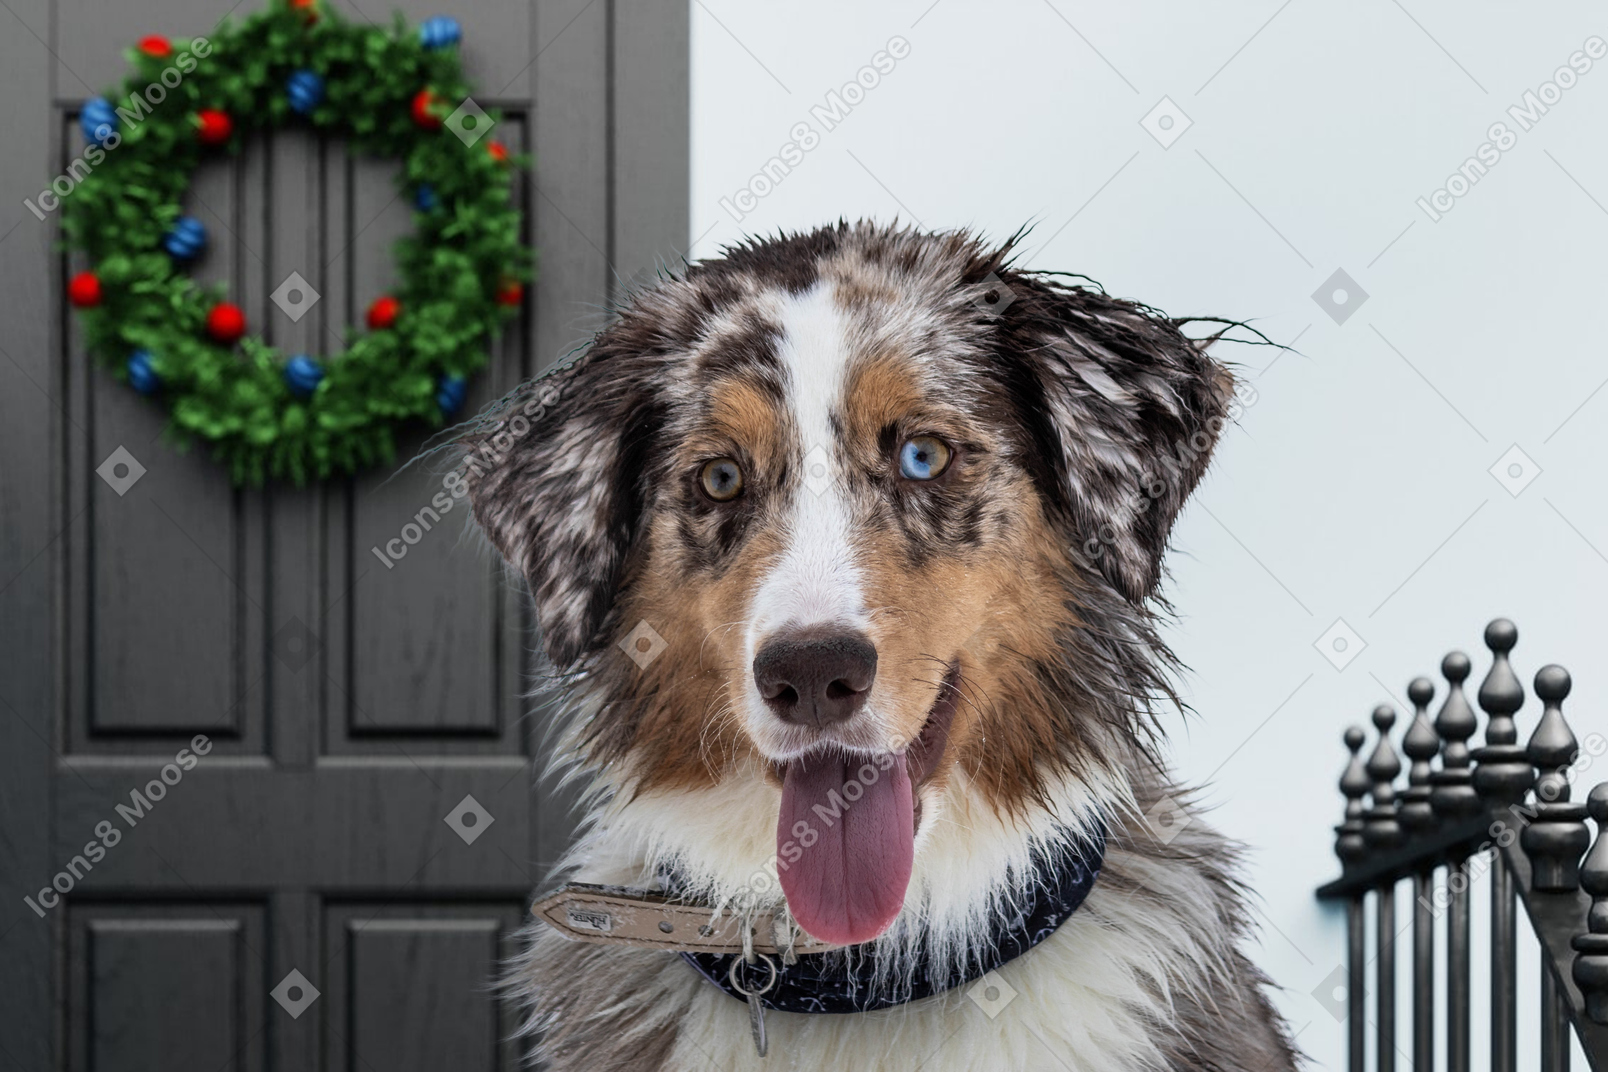 Süßer hund in der nähe einer tür für weihnachten dekoriert